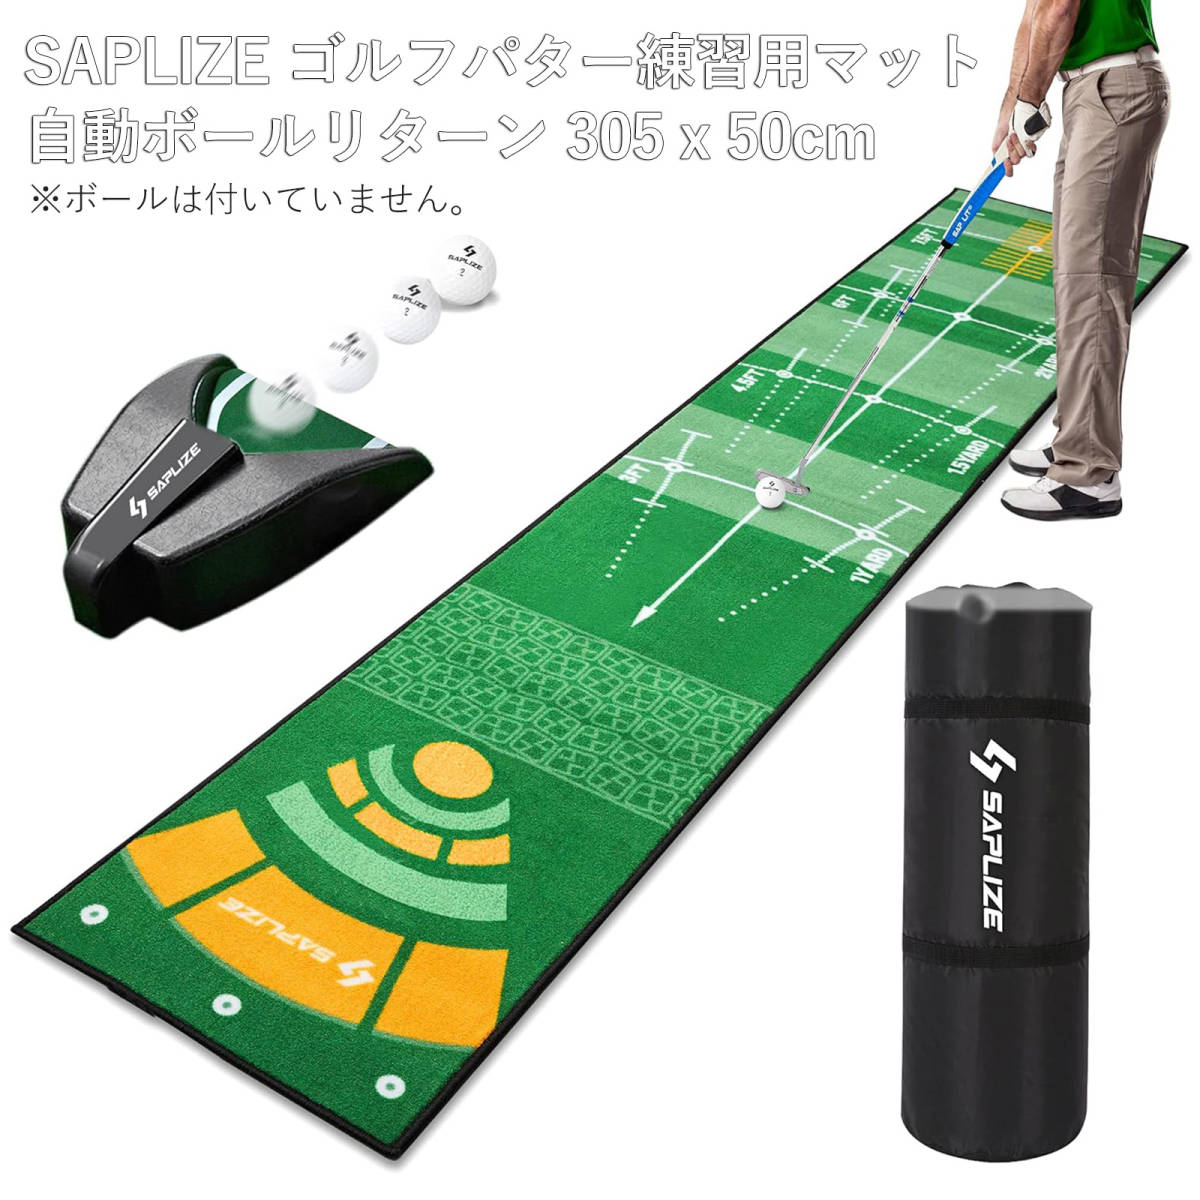 ゴルフ マット Saplize セープライズ ゴルフ パター 練習 マット 自動ボールリターナー付き 滑り止め 50*305cm_画像1